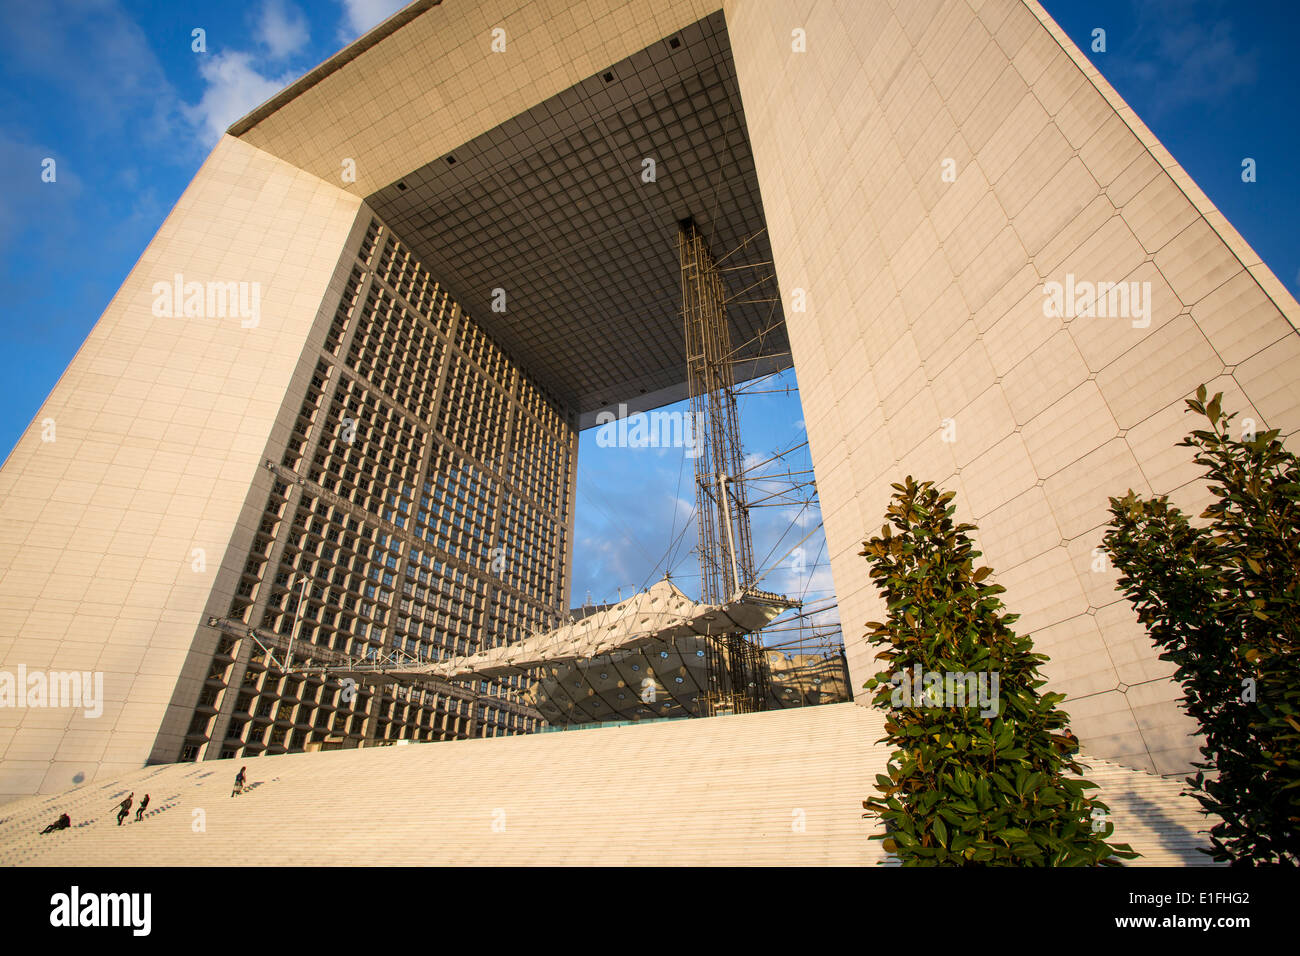 La Grande Arche in the modern business district - La Defense, Paris France Stock Photo